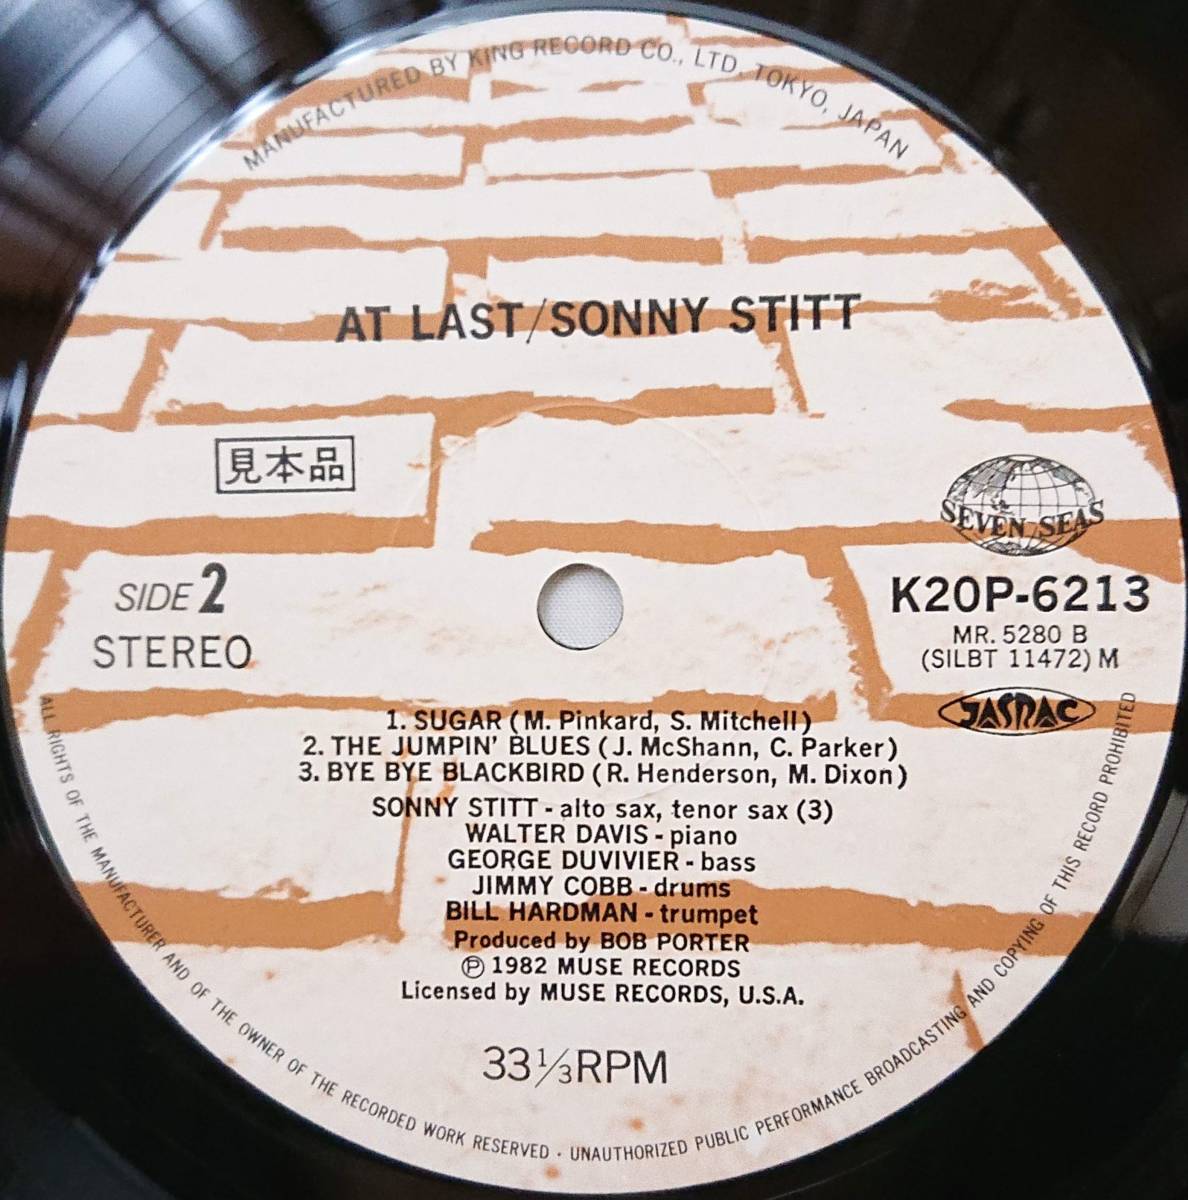 SONNY STITT : AT LAST ソニー・スティット アット・ラスト 見本盤 帯付き 国内盤 中古アナログLPレコード盤 1982年 K20P-6212/3 M2KDO1263_画像4